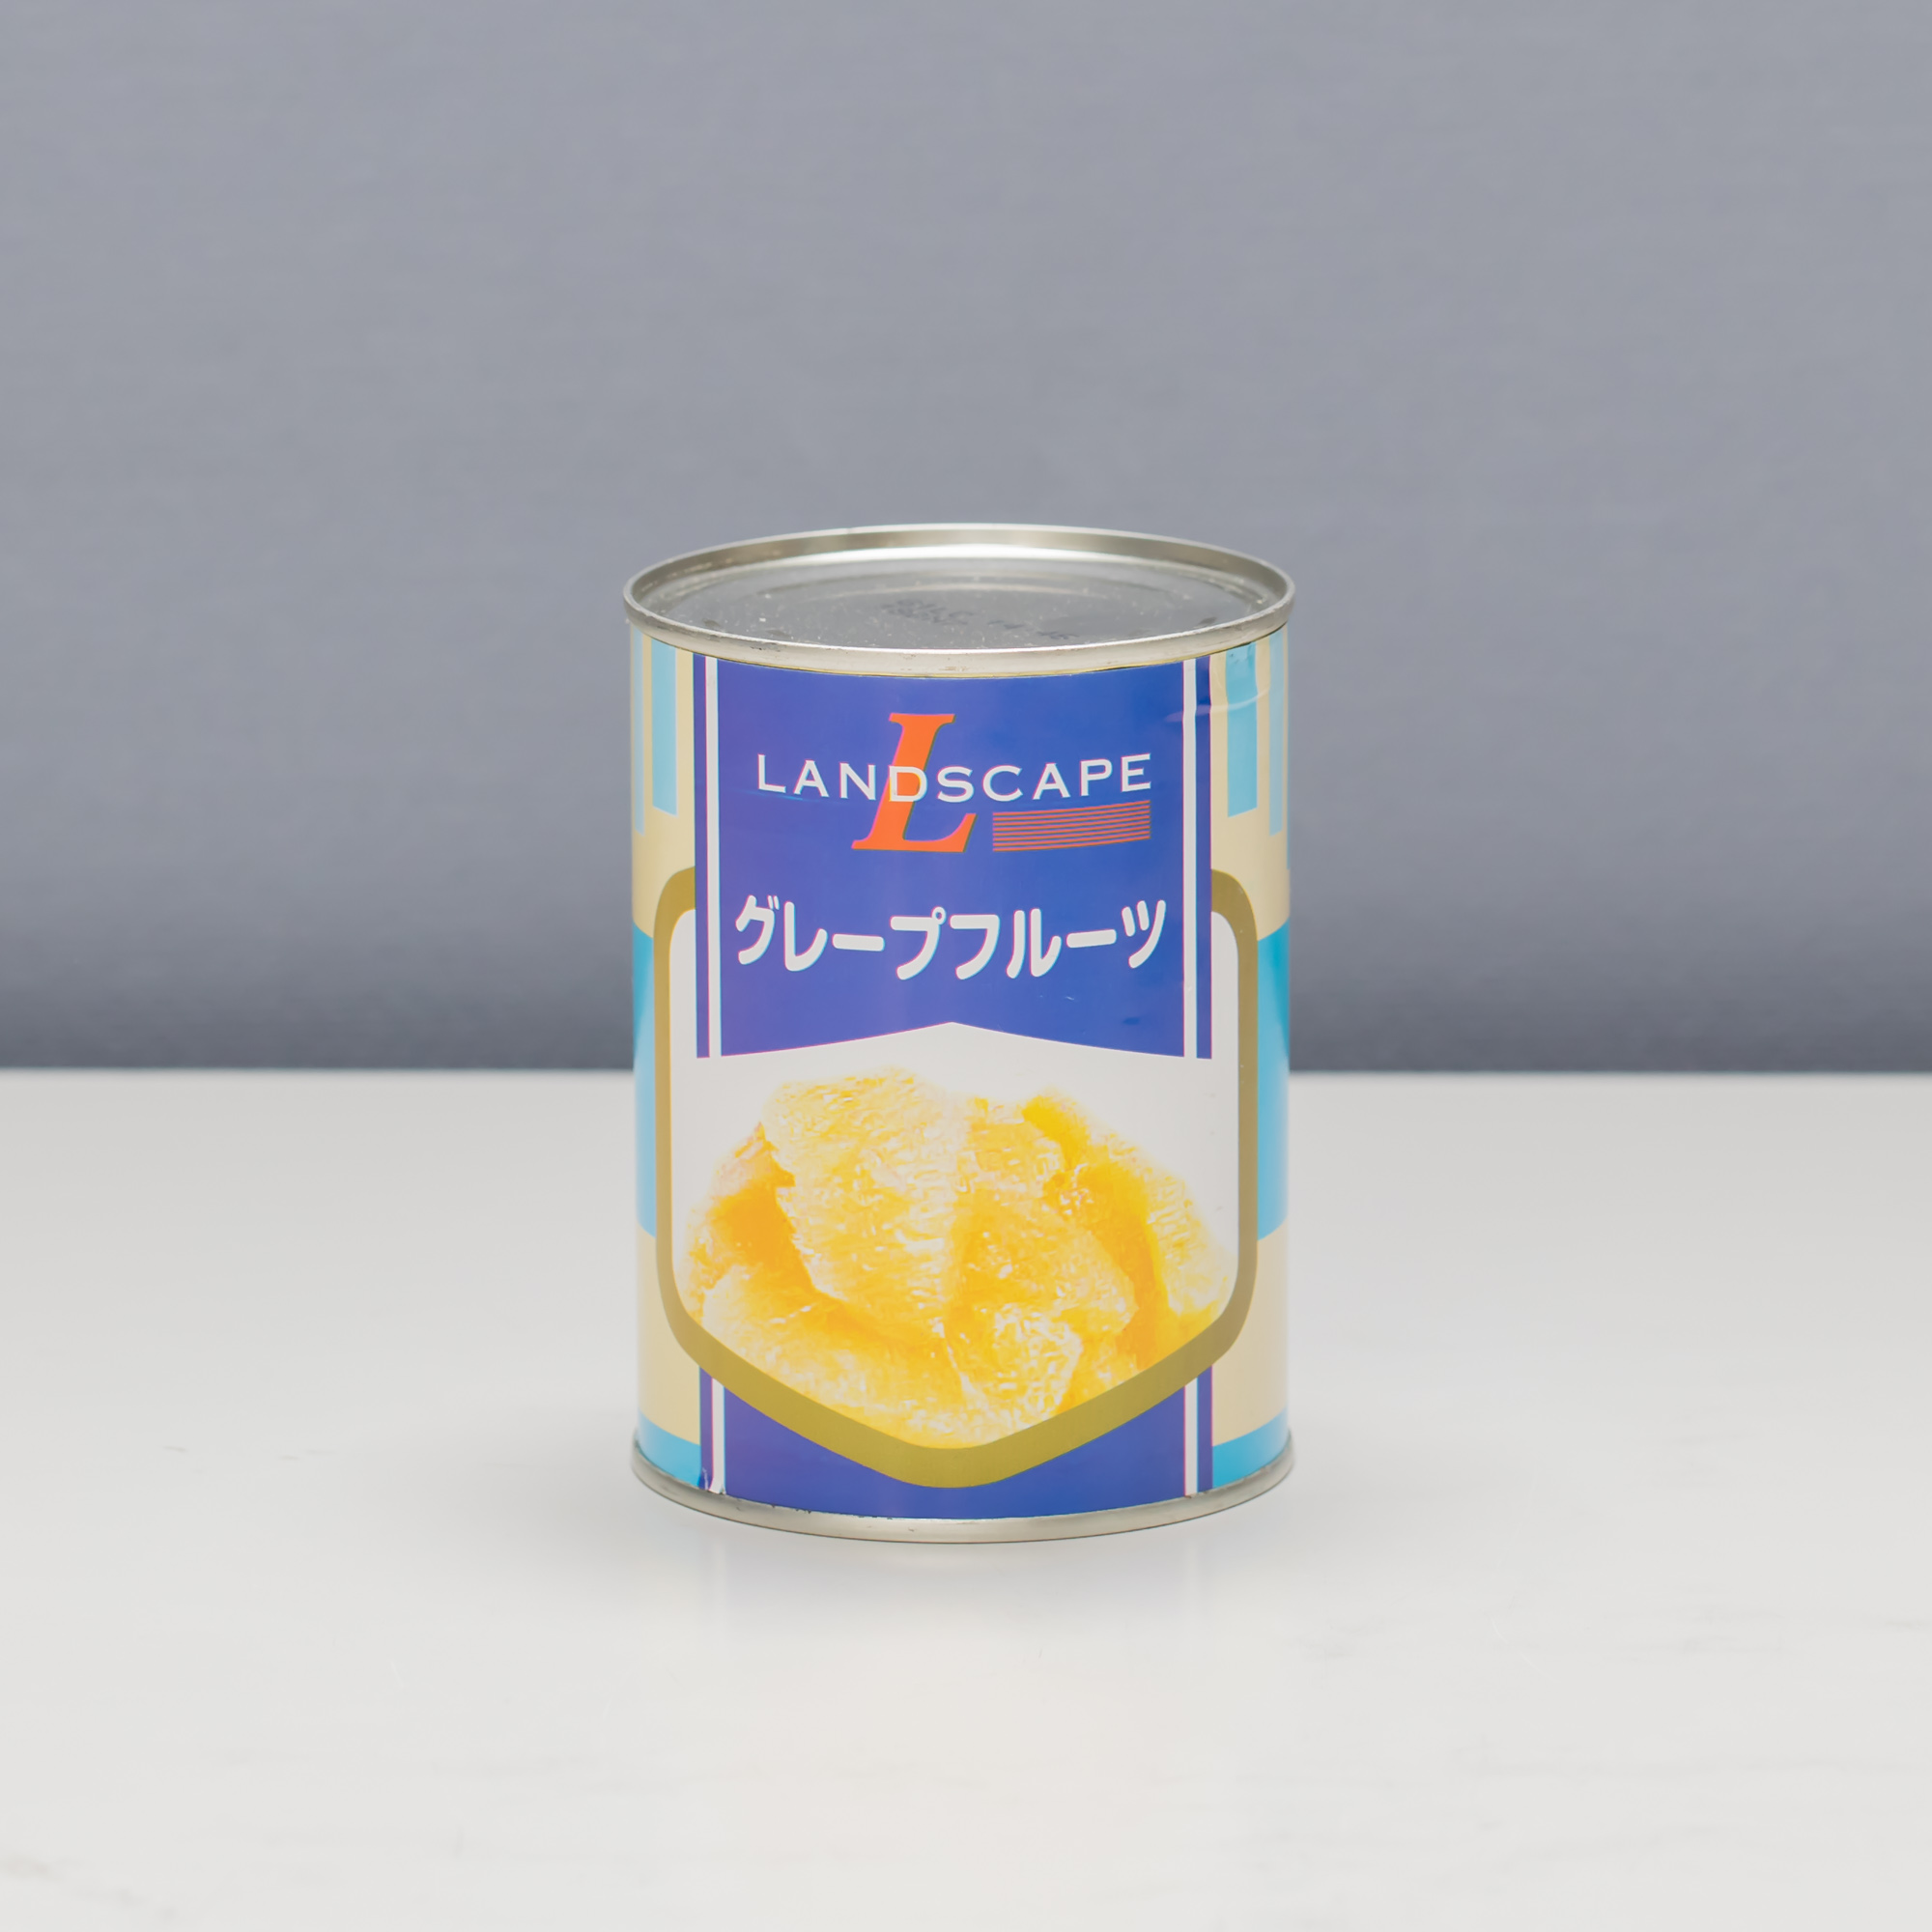 オレンジ・グレープフルーツ | マックストレーディング株式会社